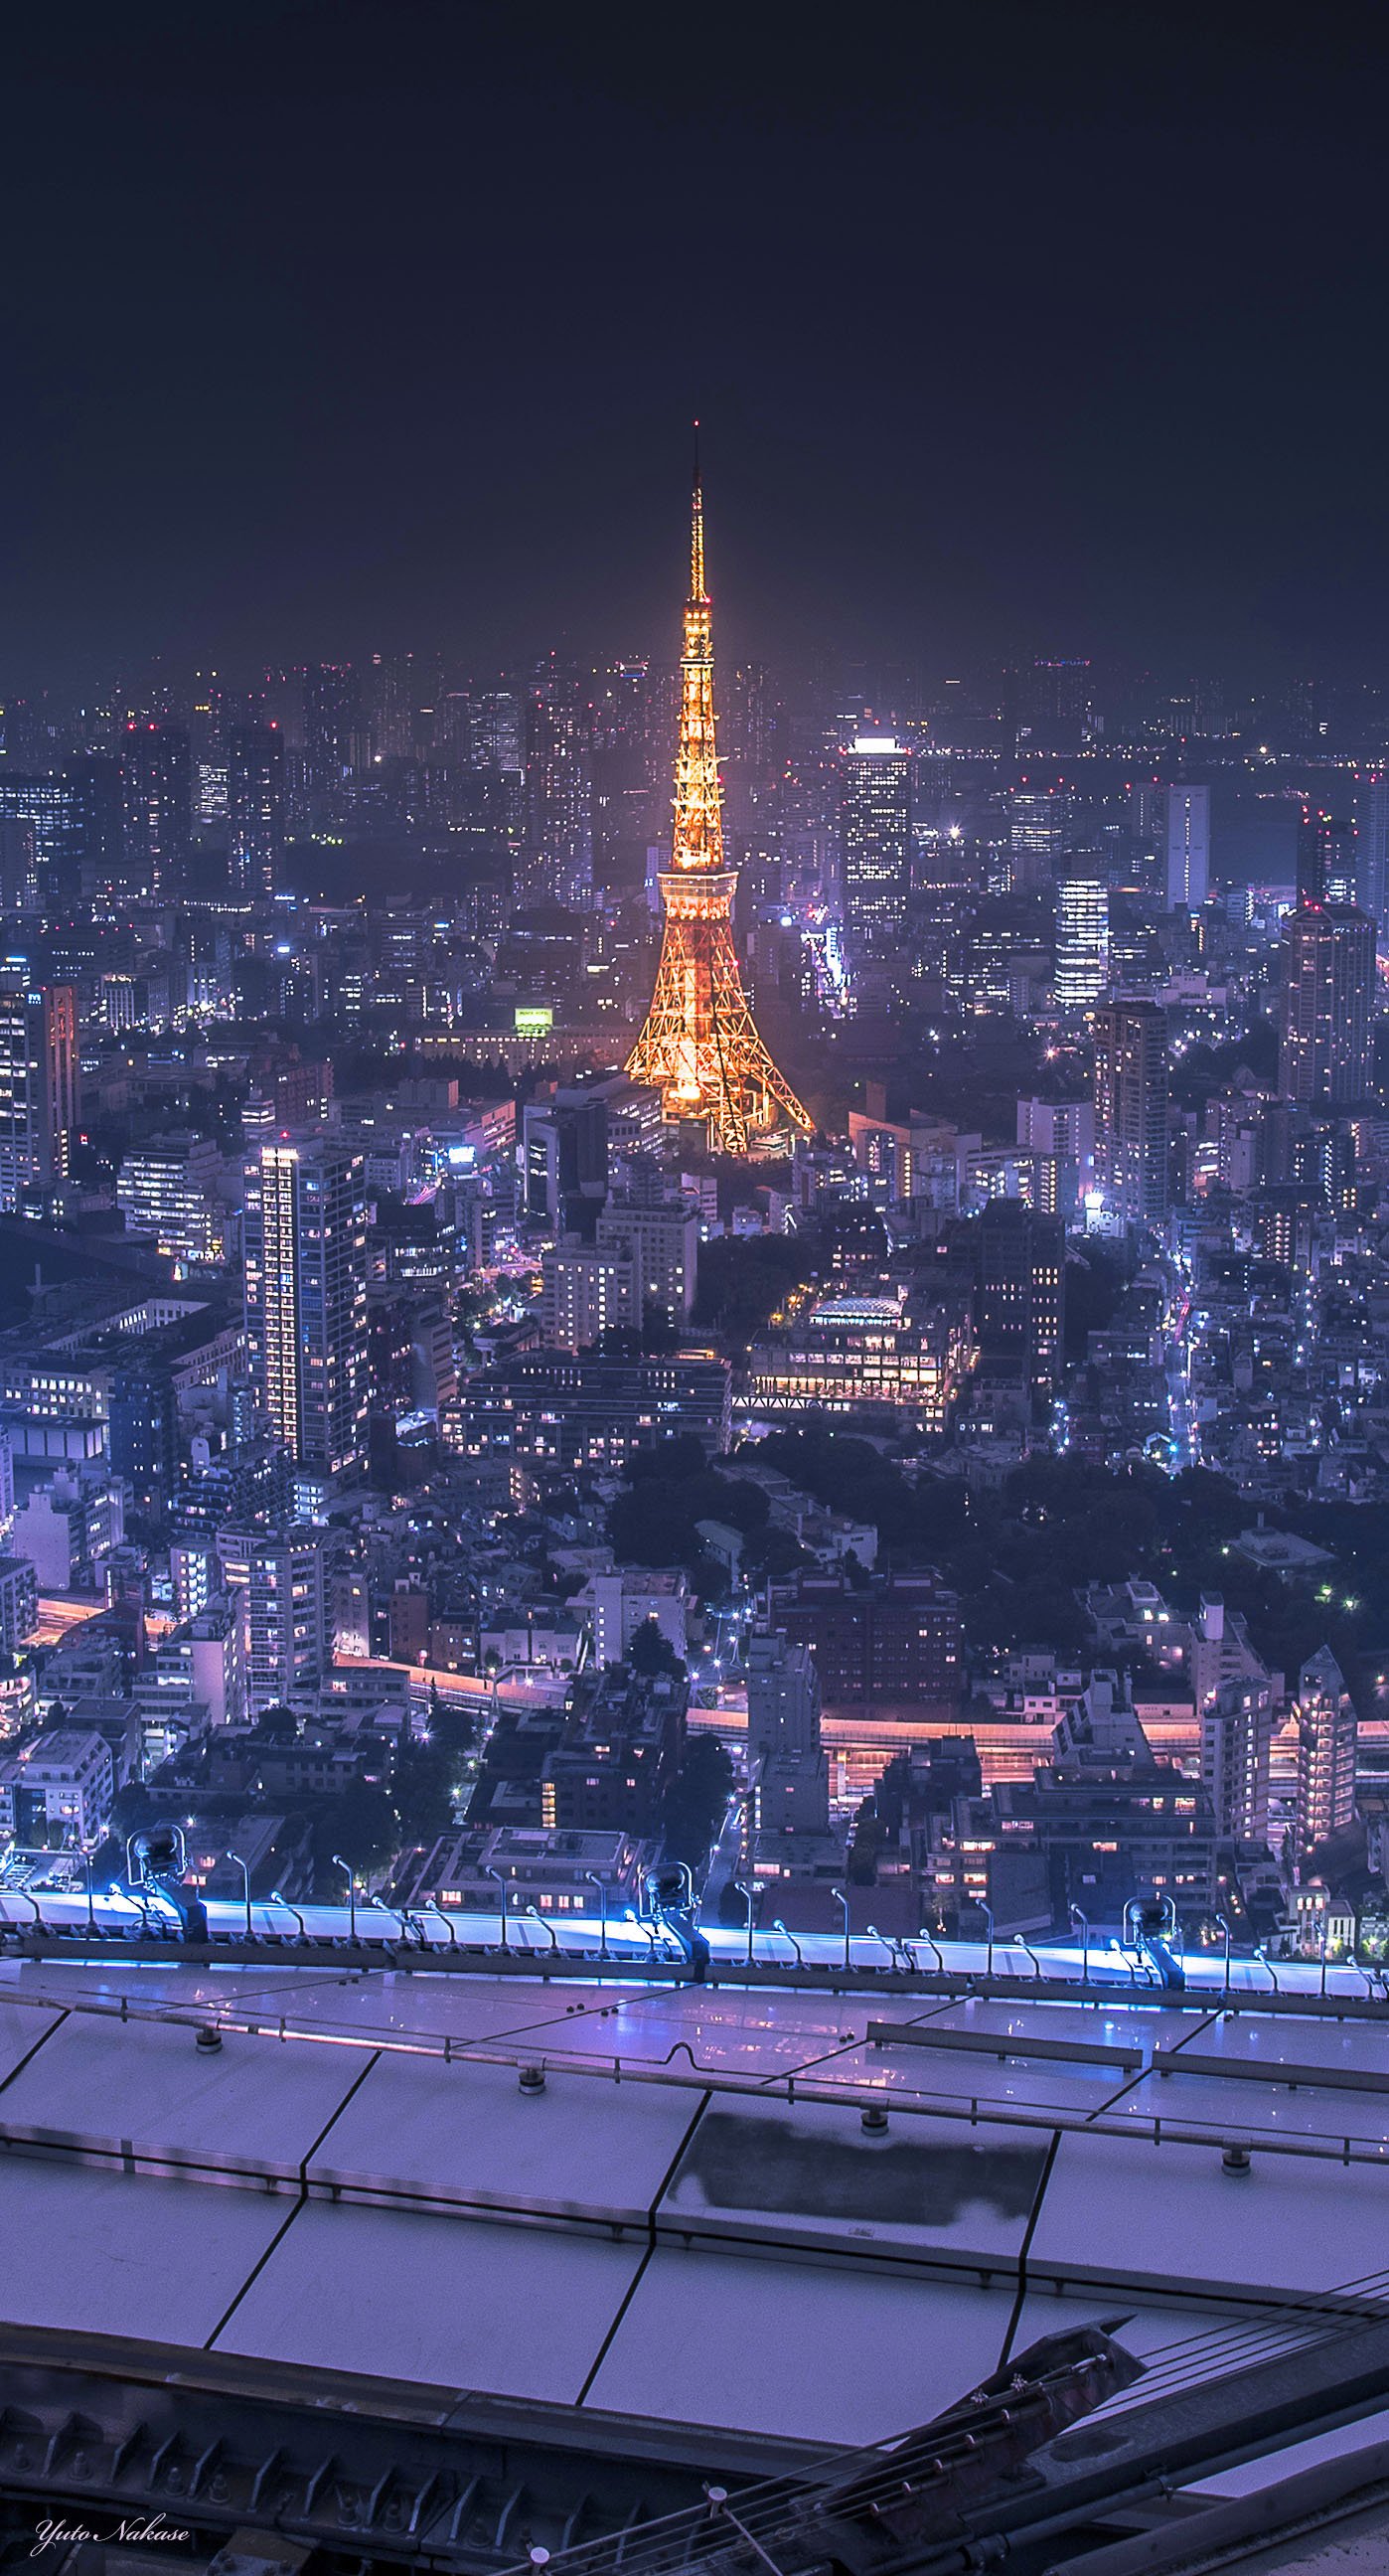 中瀬雄登 写真教室やってます 東京タワー大好きです 六本木ヒルズからと晴海ふ頭からの夜景です スマホの壁紙として使用できるサイズです Iphone壁紙 ニッポンを撮る 東京タワー 六本木ヒルズ 晴海ふ頭 夜景 T Co Mb7eopip Twitter